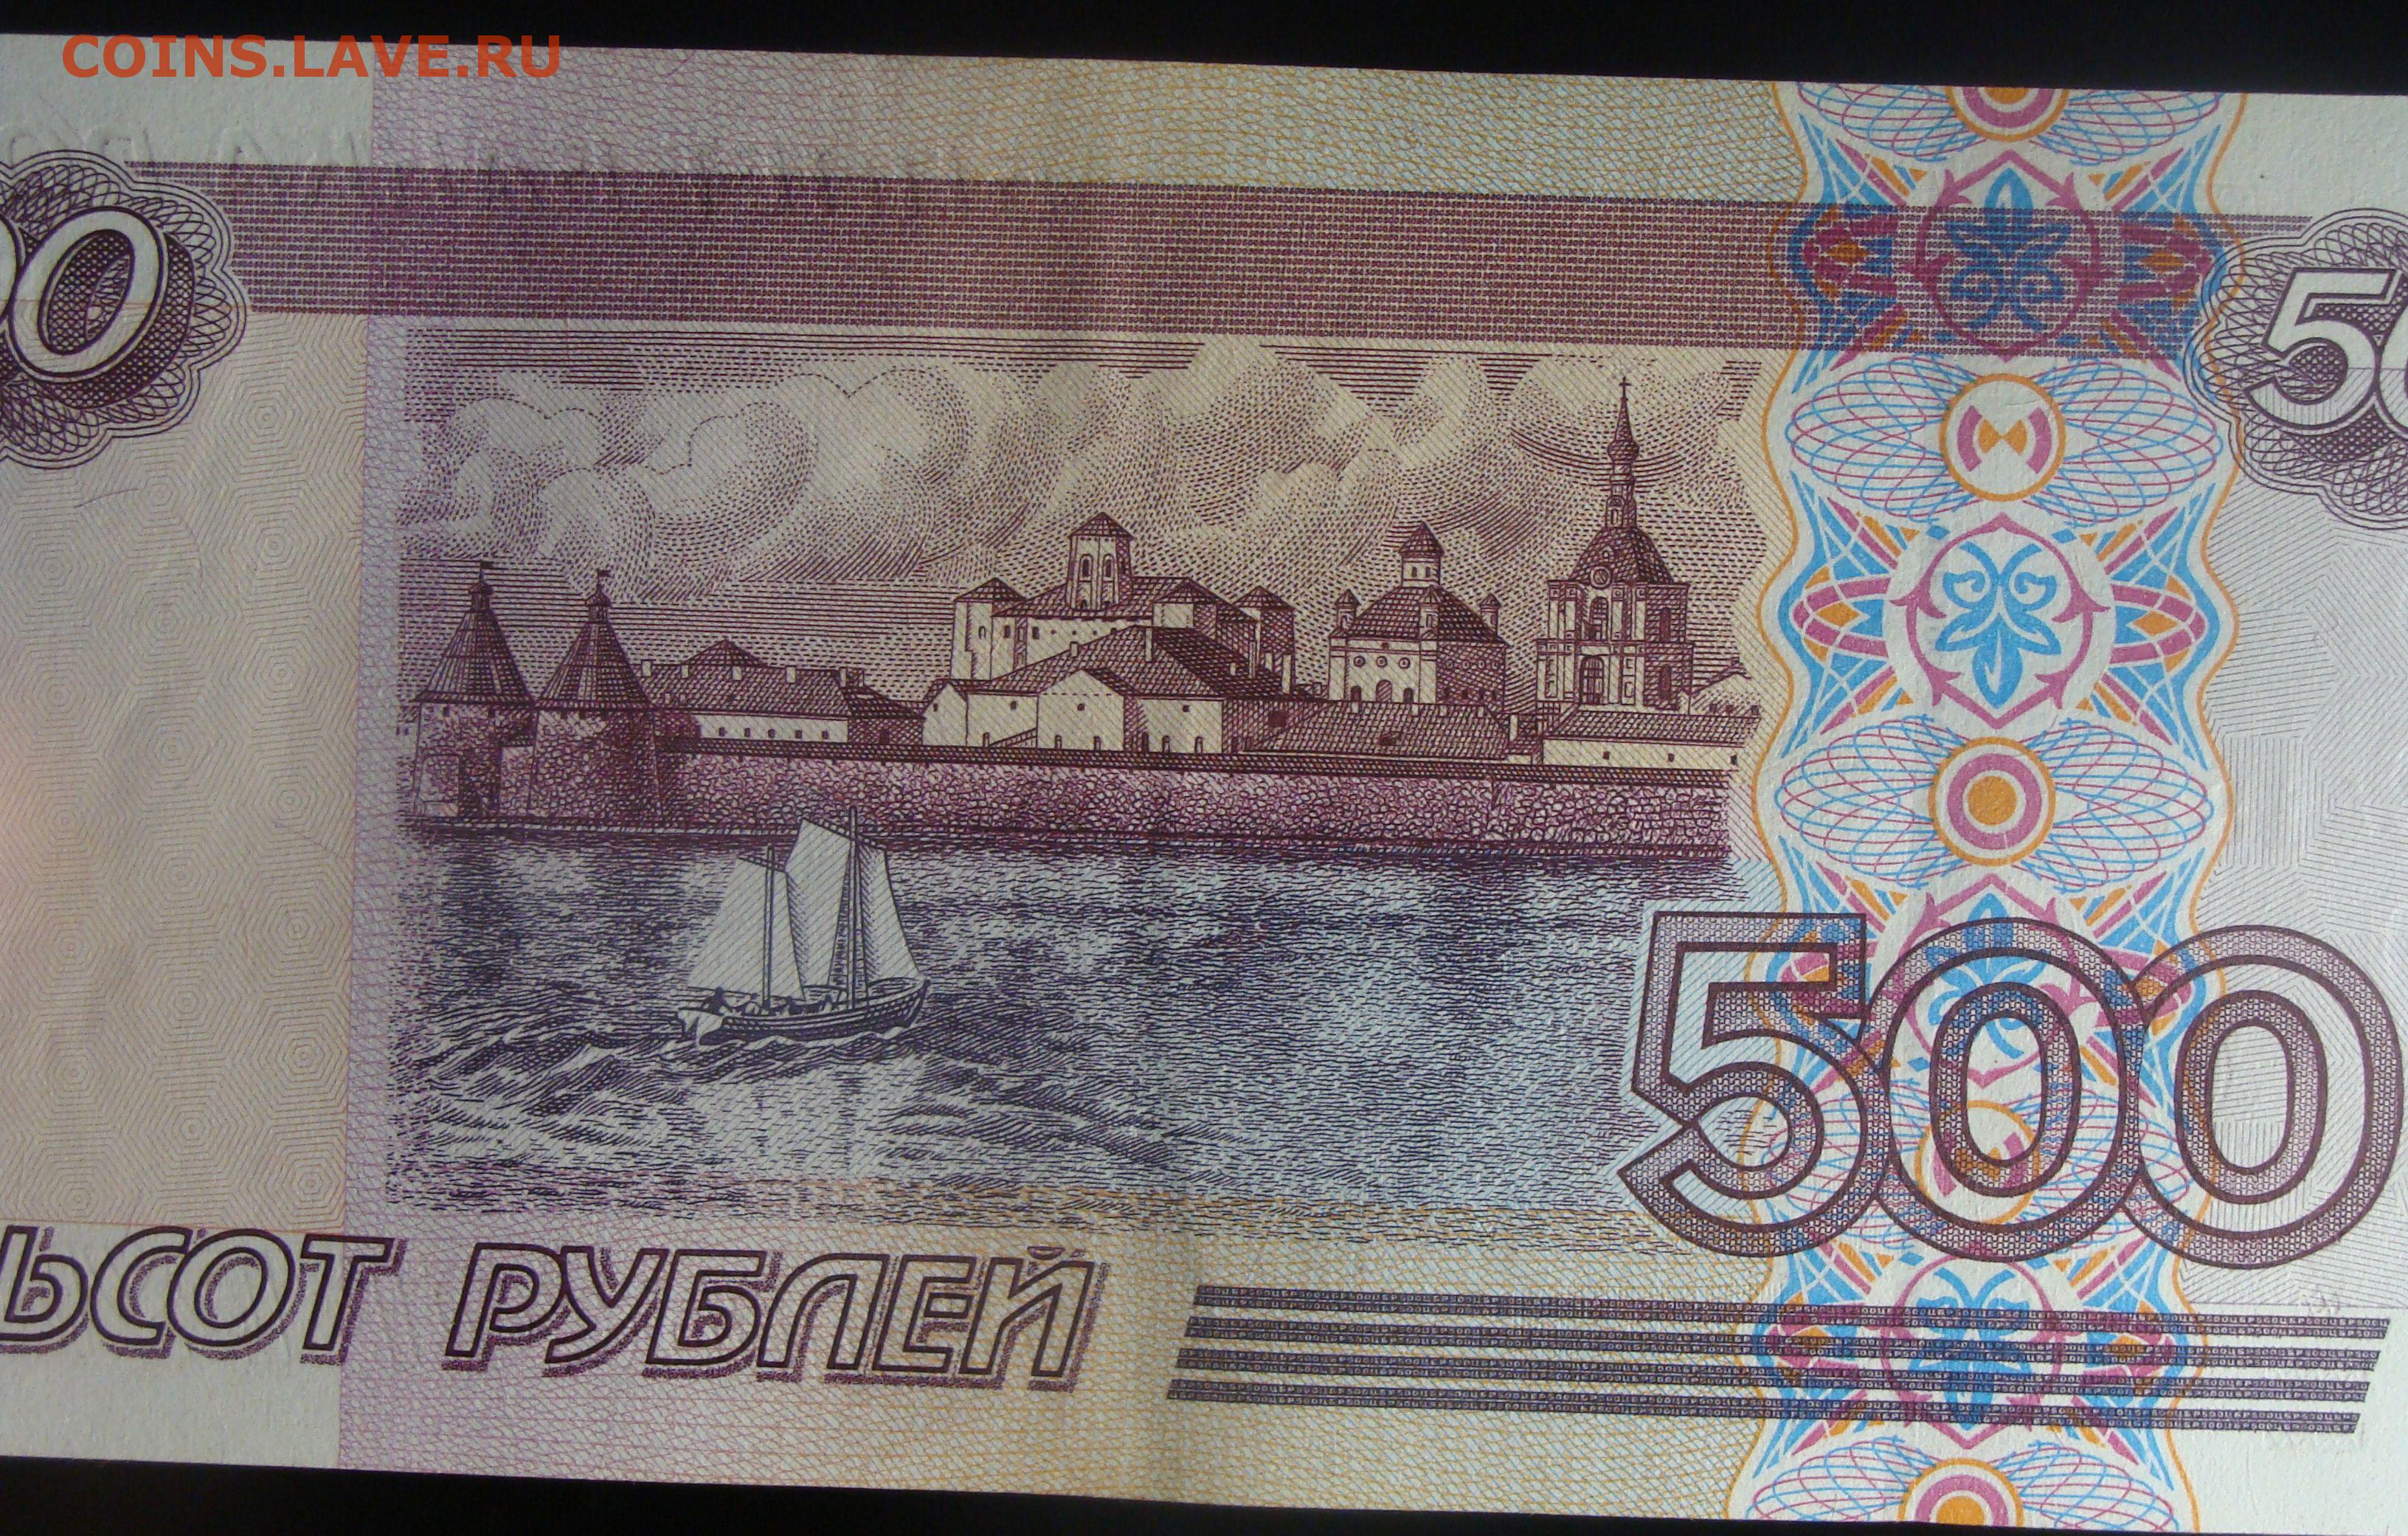 500 рублей россии в долларах